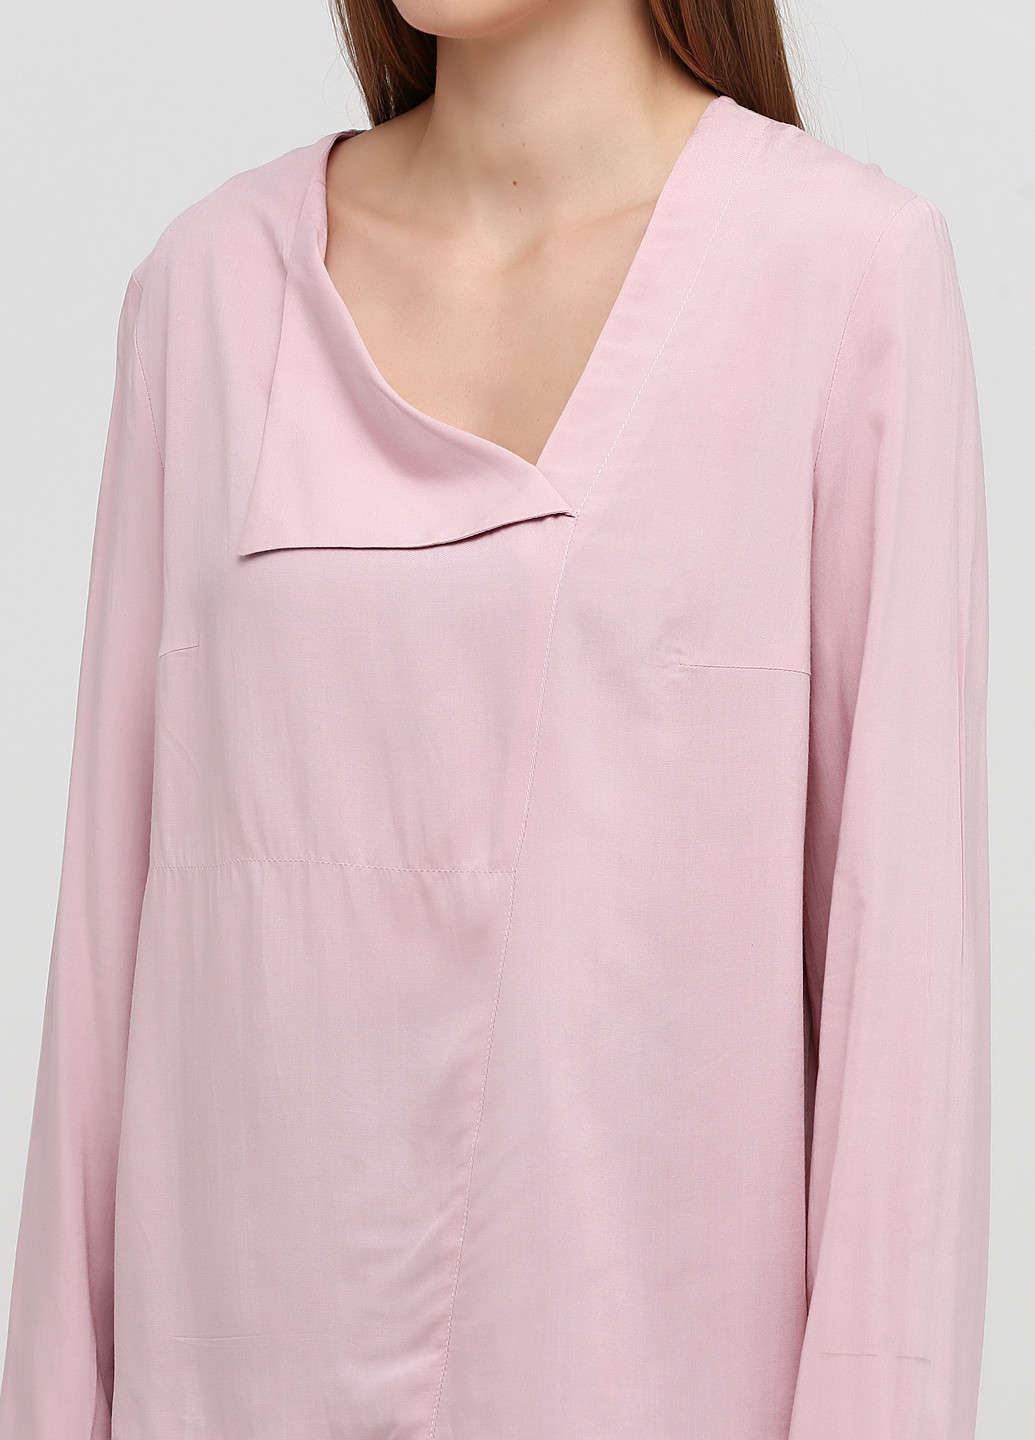 Розово-лиловая демисезонная блуза Vovk